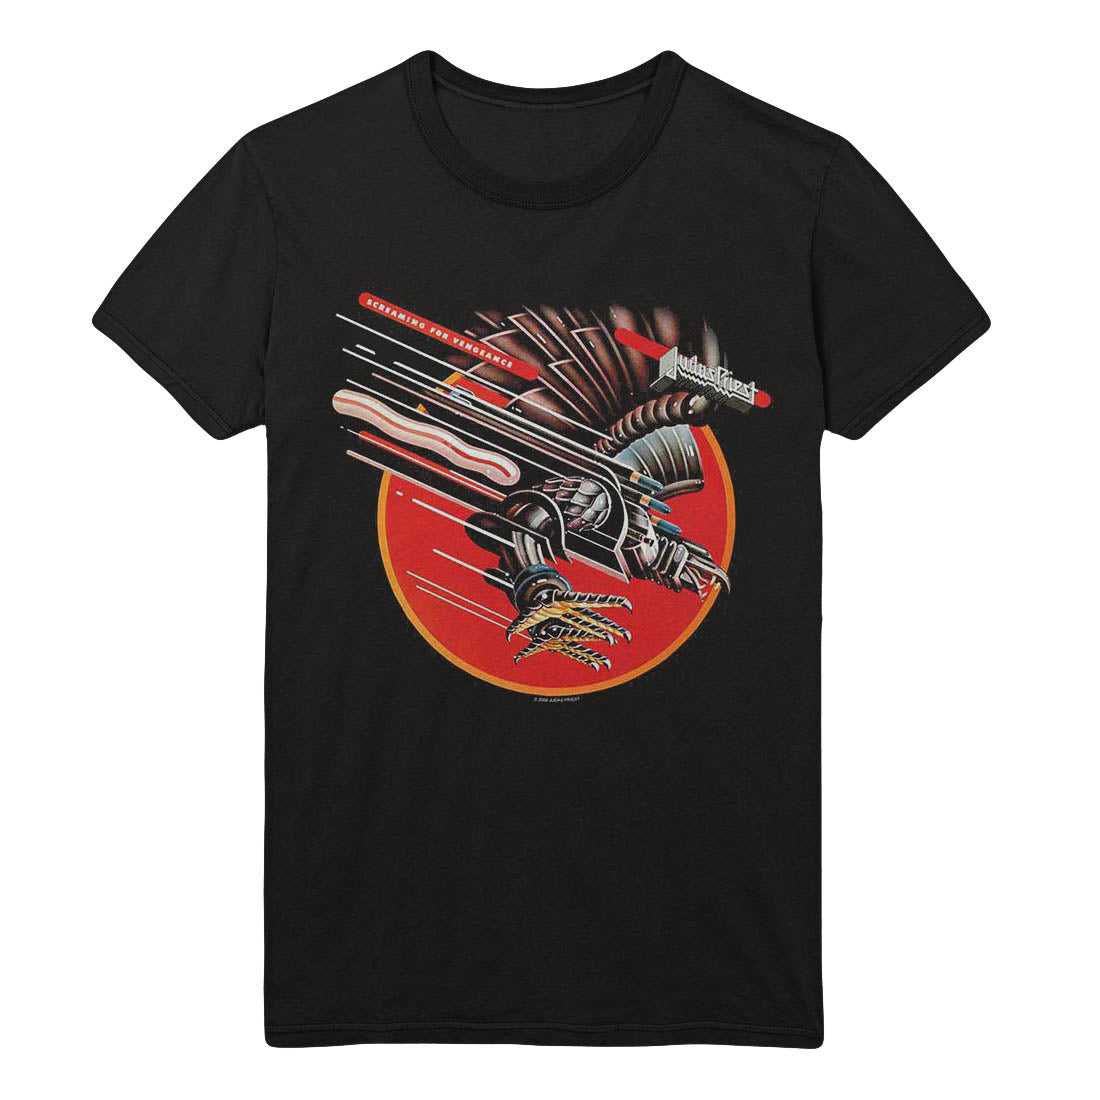 Judas Priest Screaming For Vengeance T-Shirt - GIG-MERCH.com